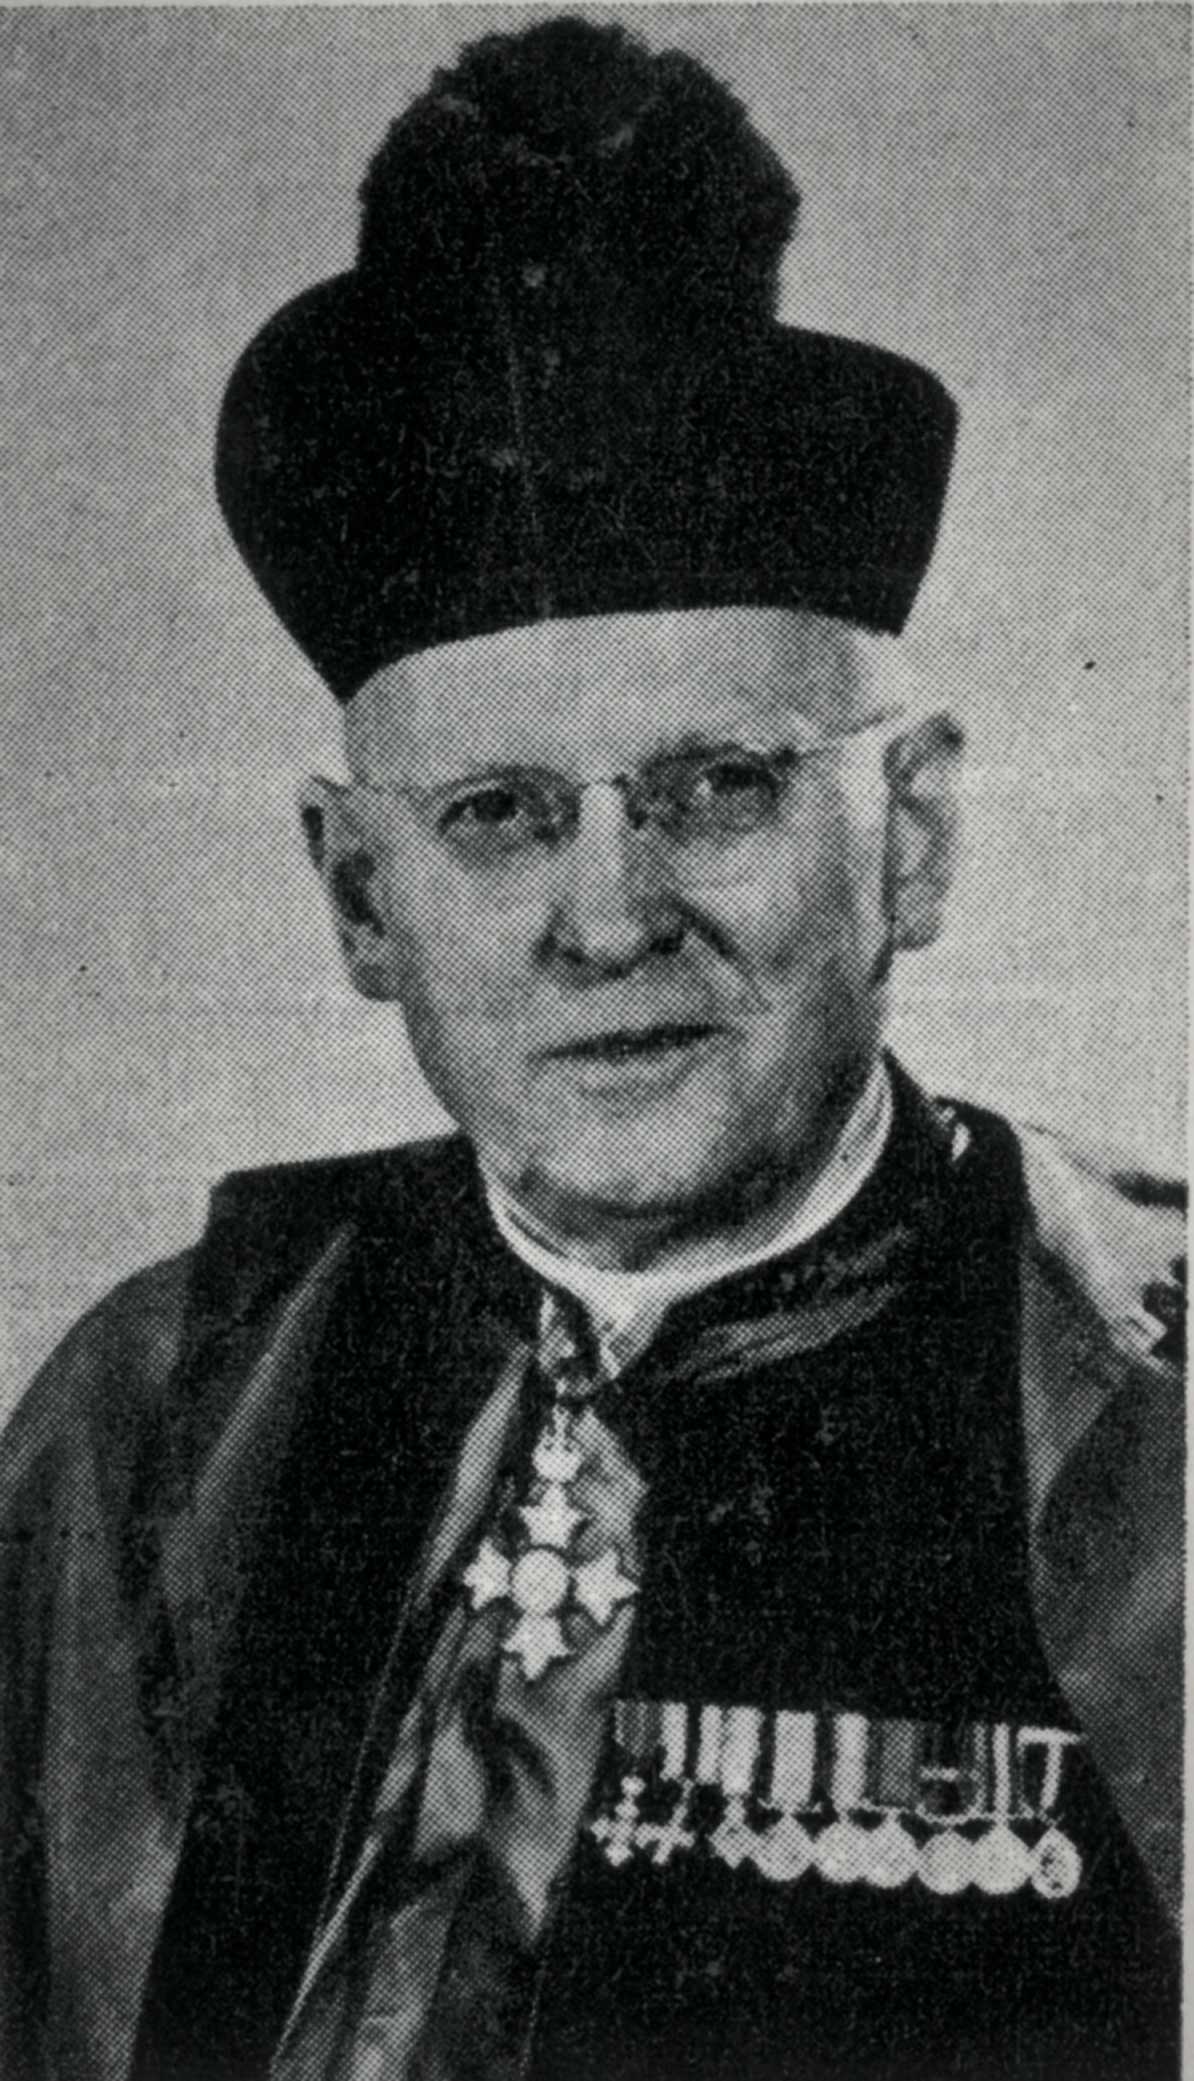 Portrait en noir et blanc – Un homme âgé est photographié à partir de la poitrine dans son habit religieux, y compris un chapeau et une cape. Il porte des médailles militaires miniatures et un insigne en sautoir de l’Ordre de l'Empire britannique.